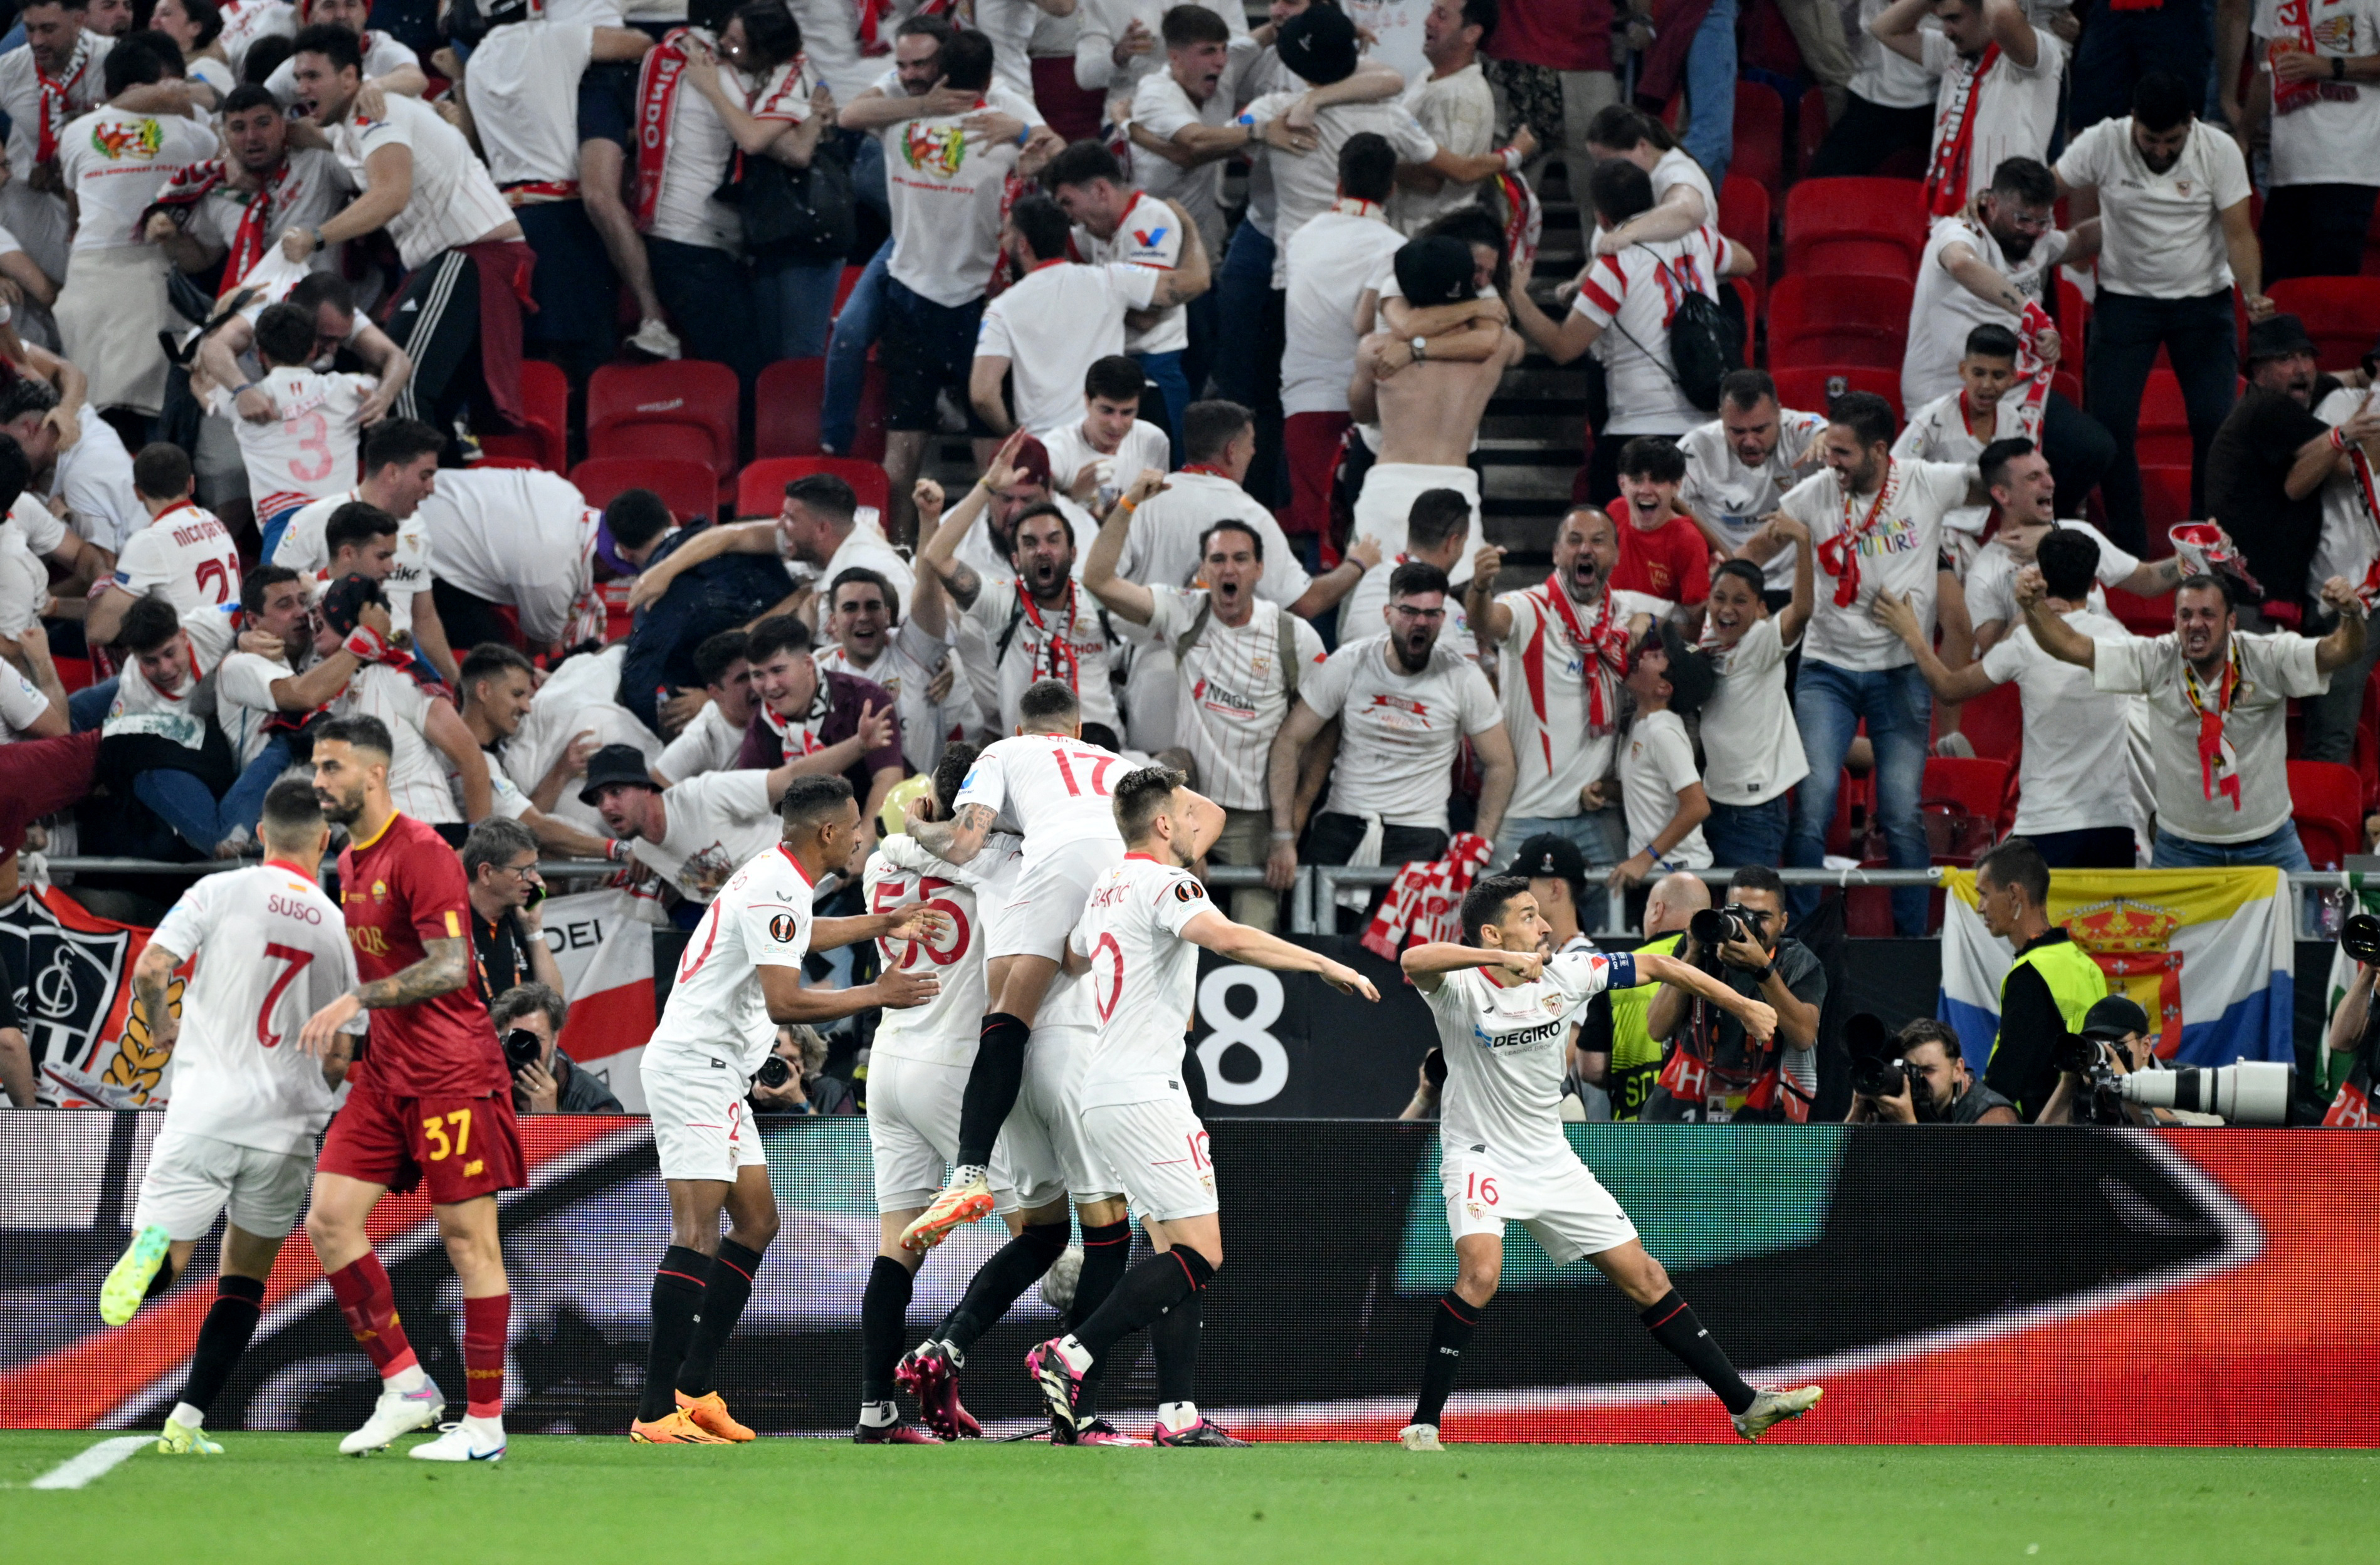 Con el penal definitorio de Gonzalo Montiel, Sevilla derrotó a la Roma y se consagró campeón de la Europa League por séptima vez en su historia